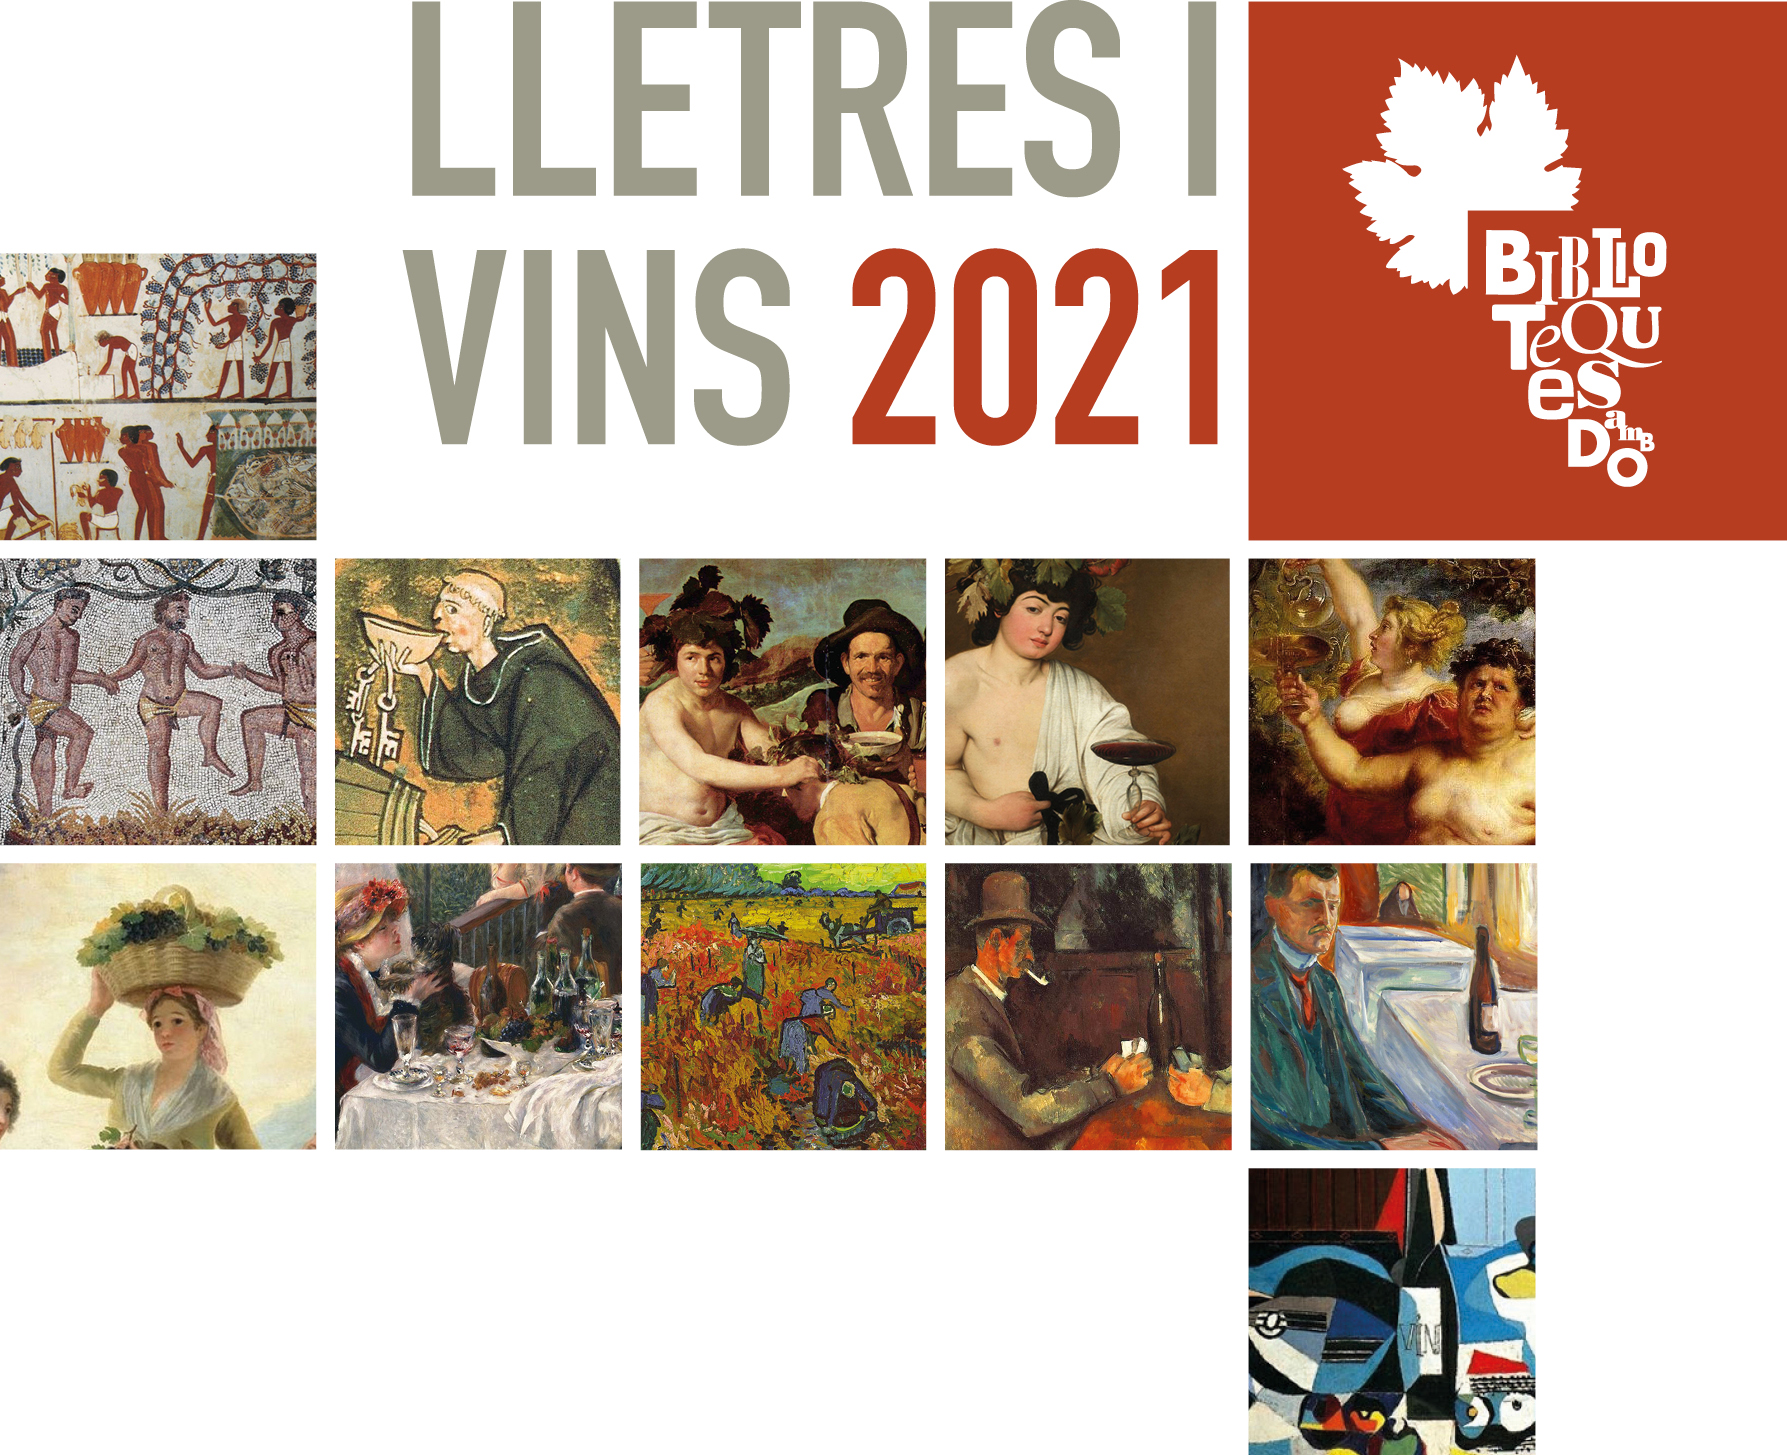 El vi a l'art centra la 9a edició de Biblioteques amb DO